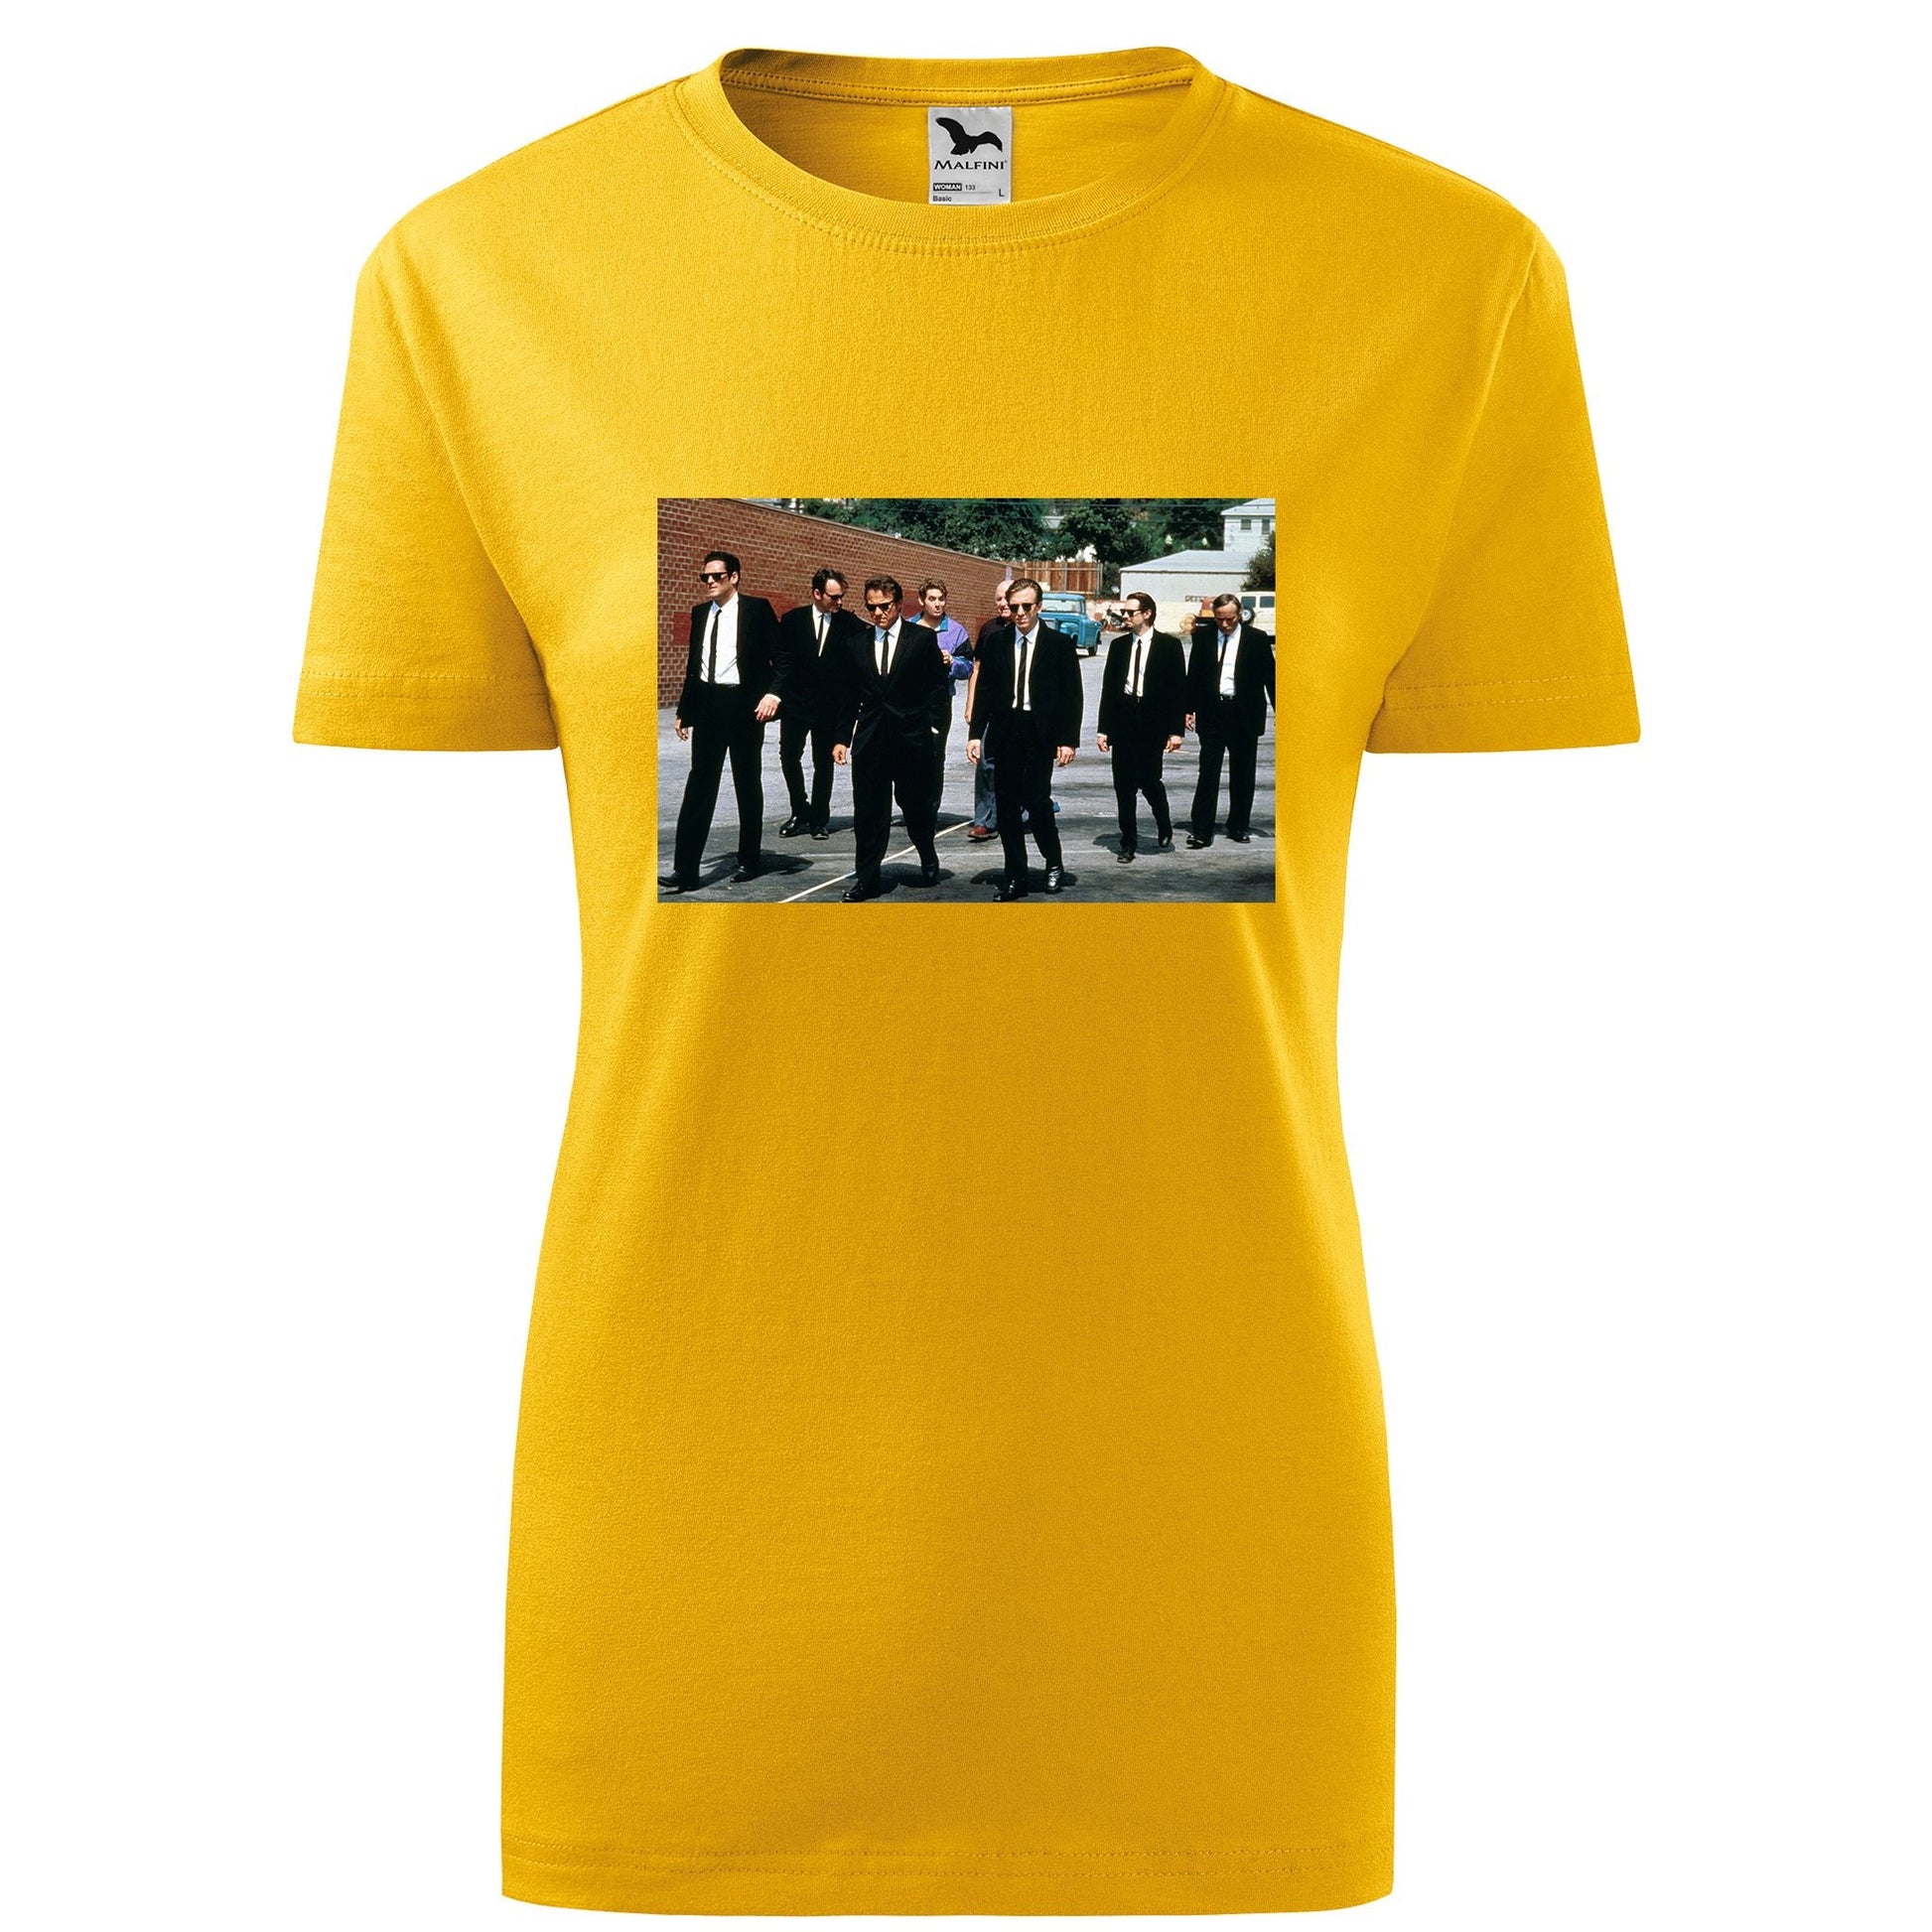 Reservoir dogs t-shirt - rvdesignprint